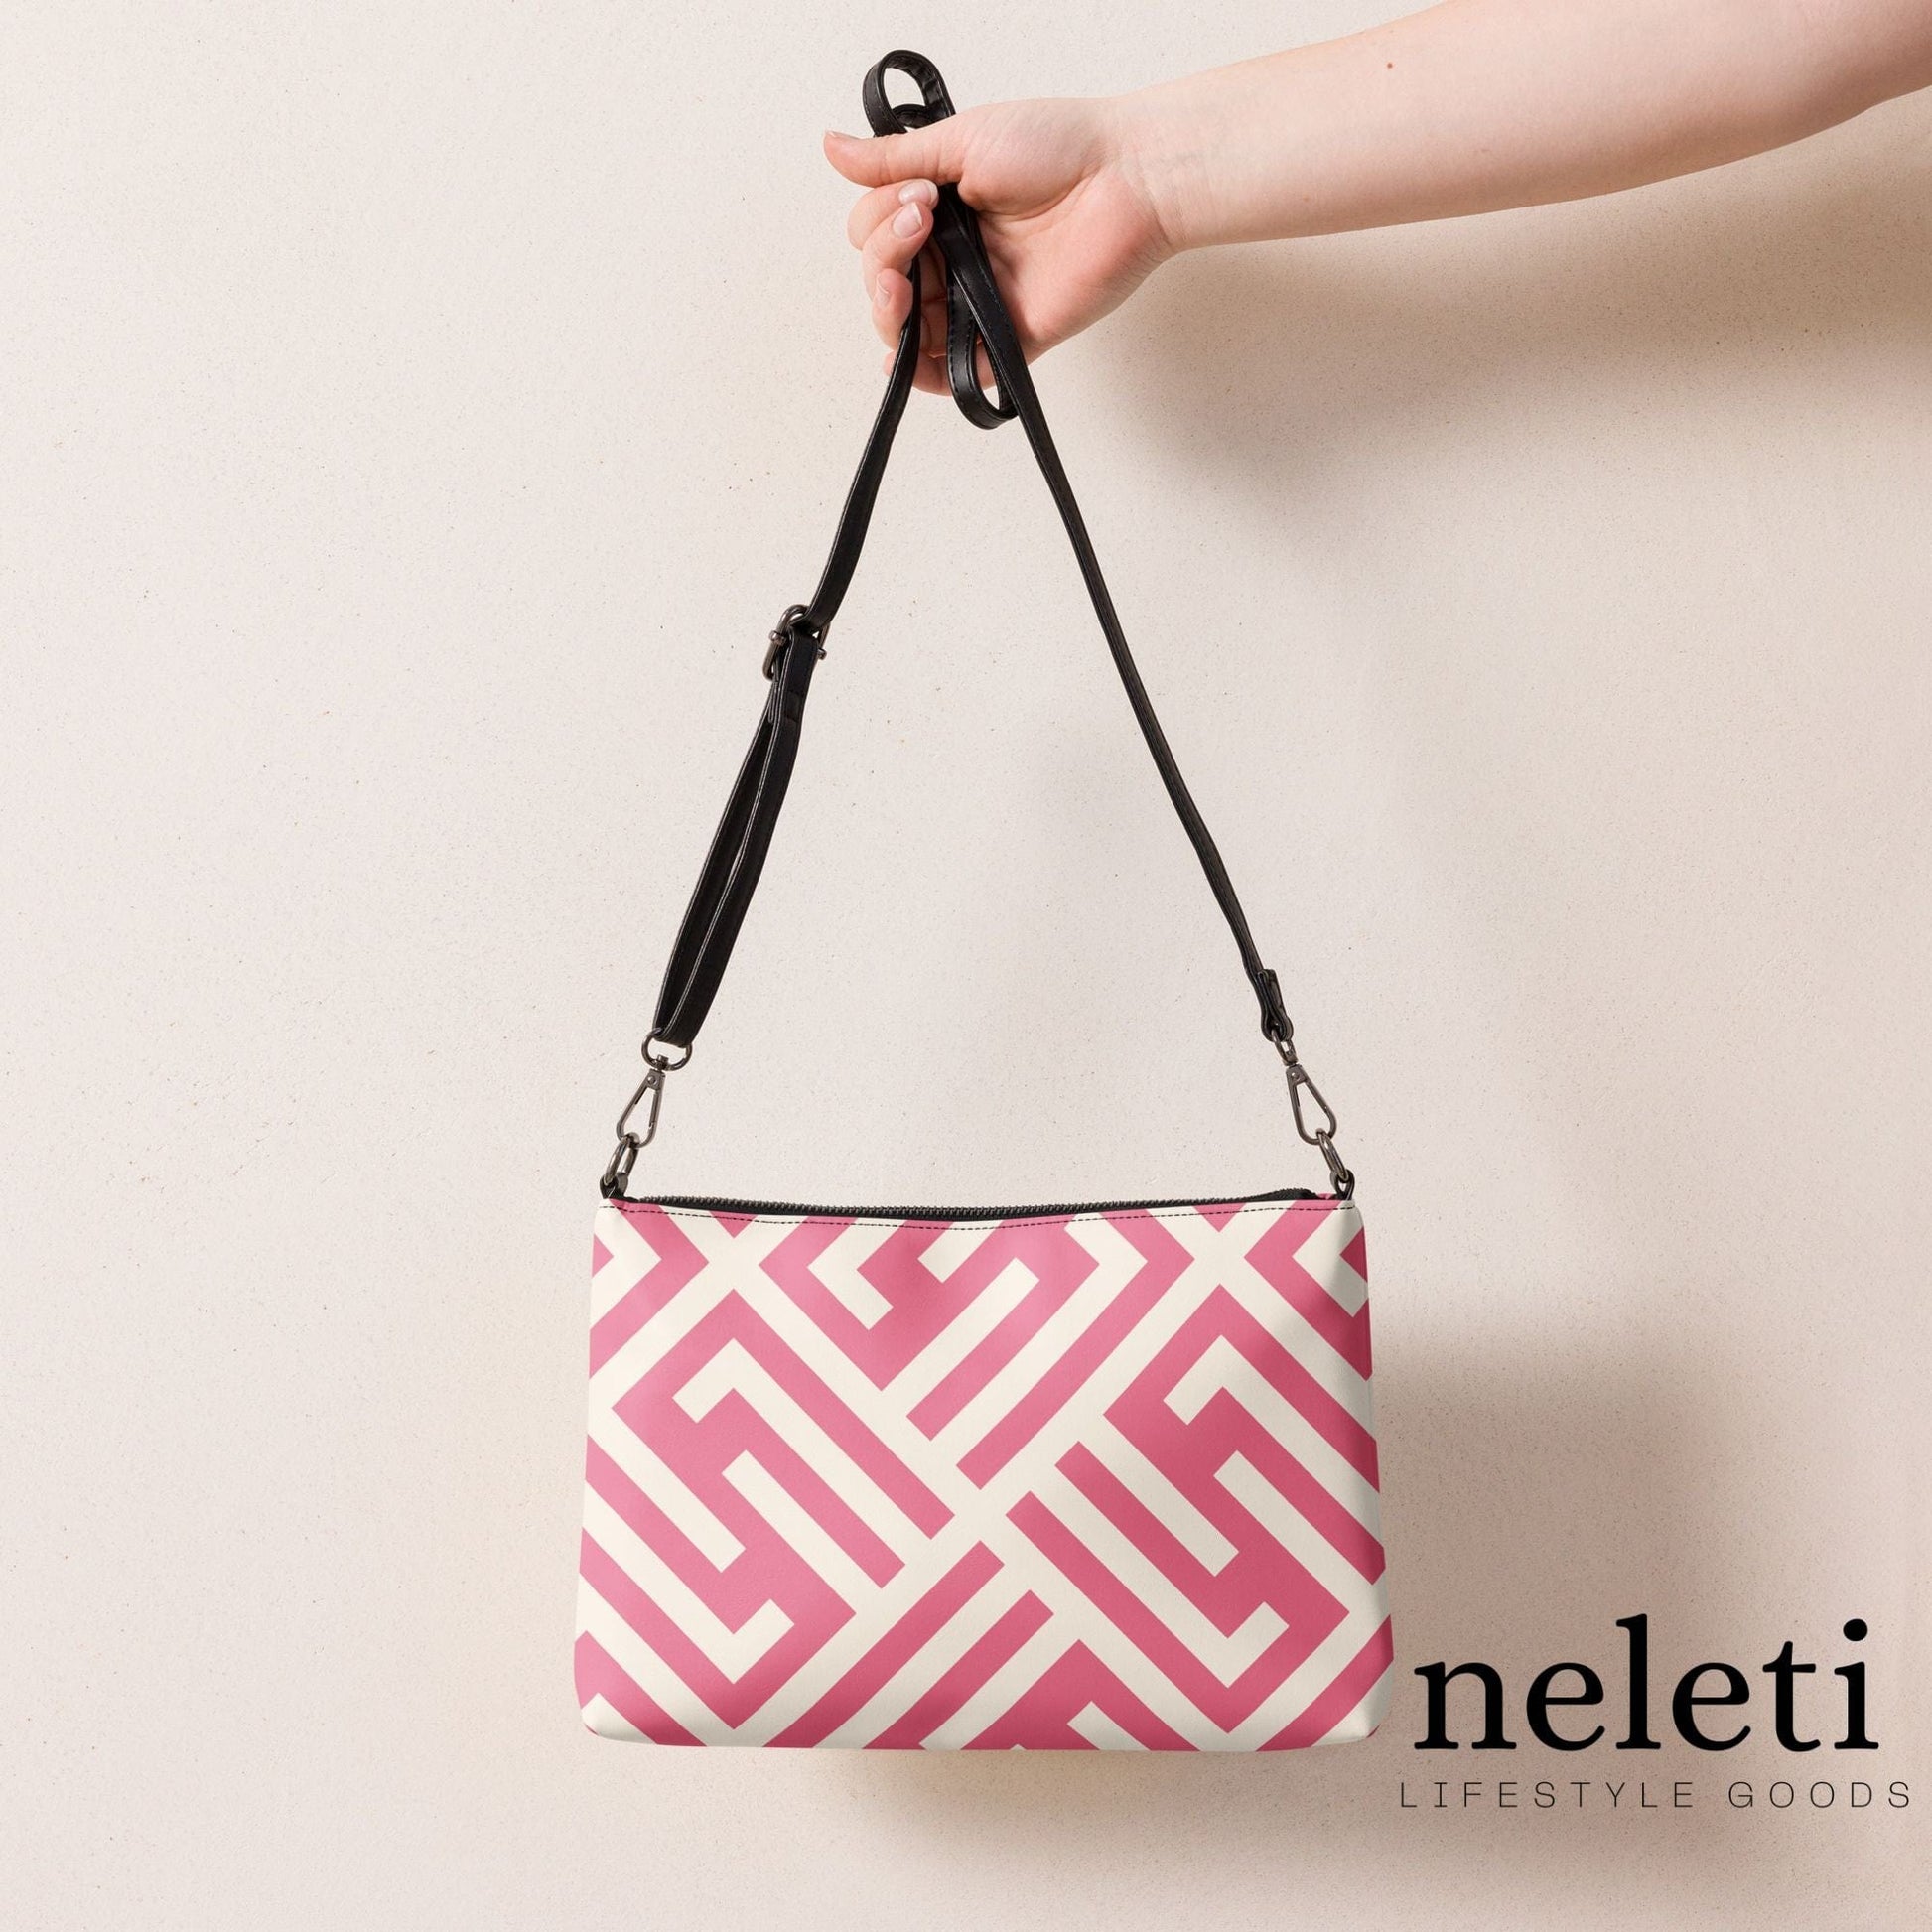 neleti.com-pink-crossbody-bag